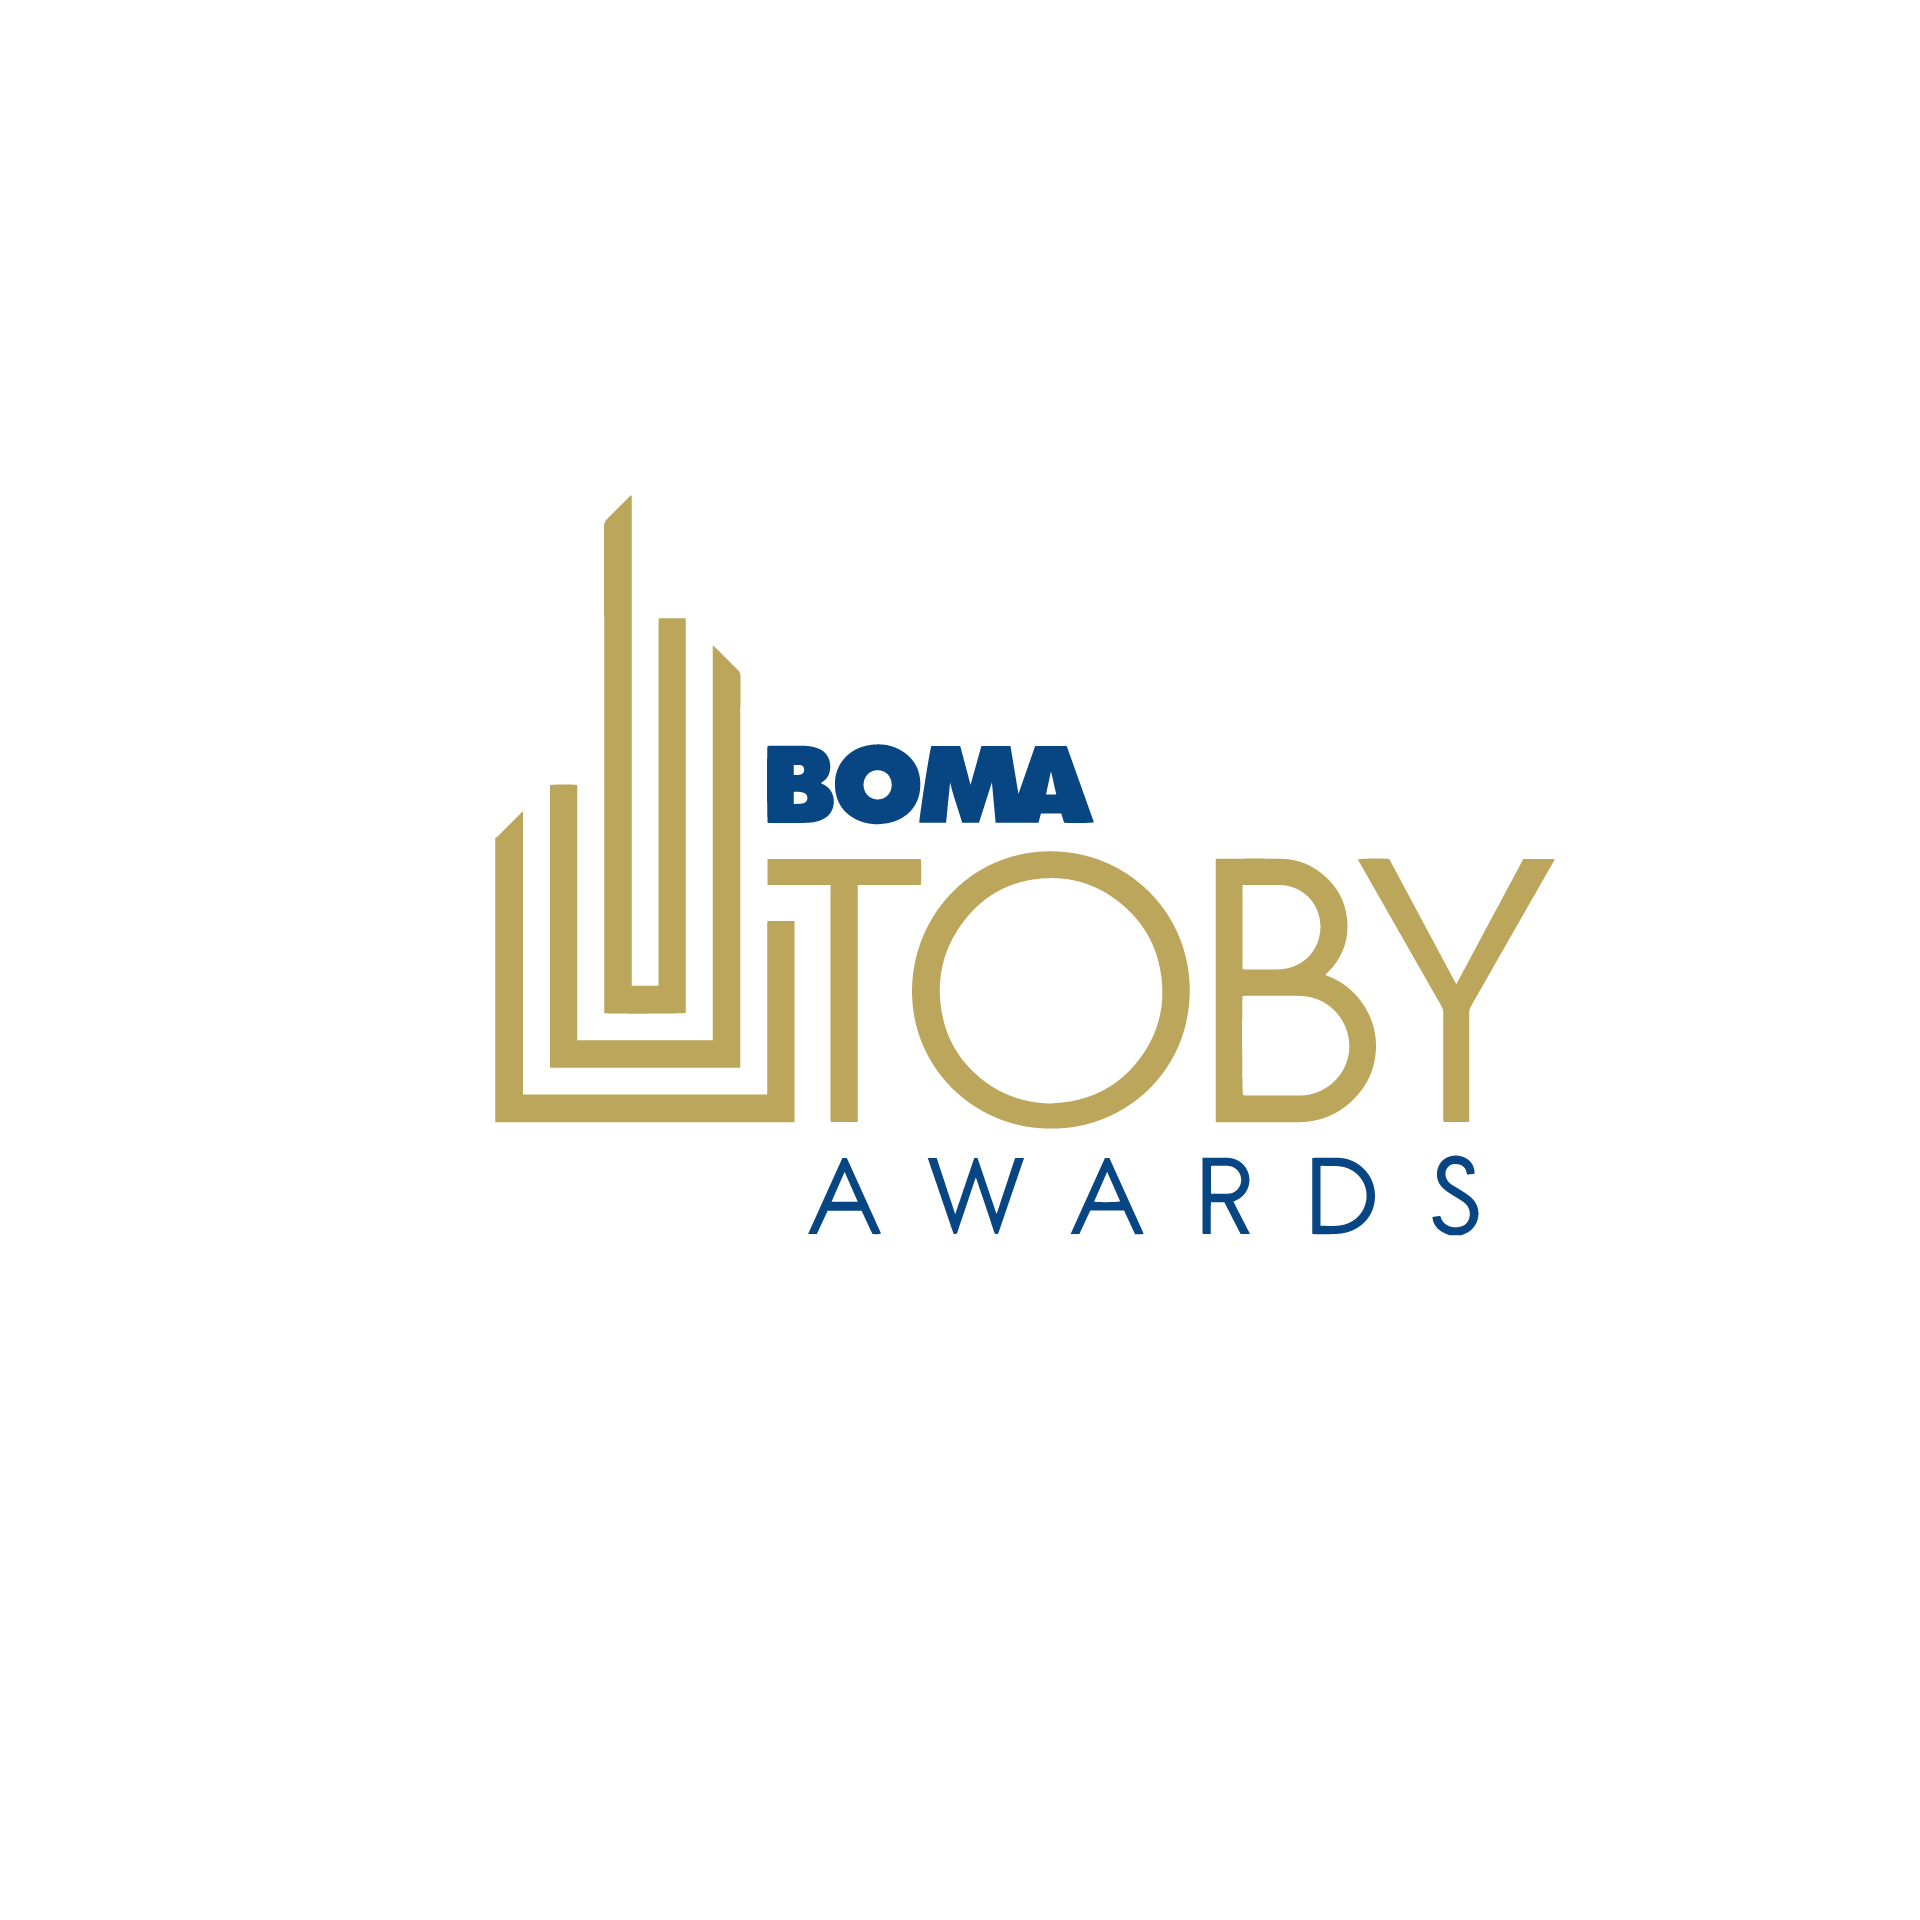 boma-toby-awards